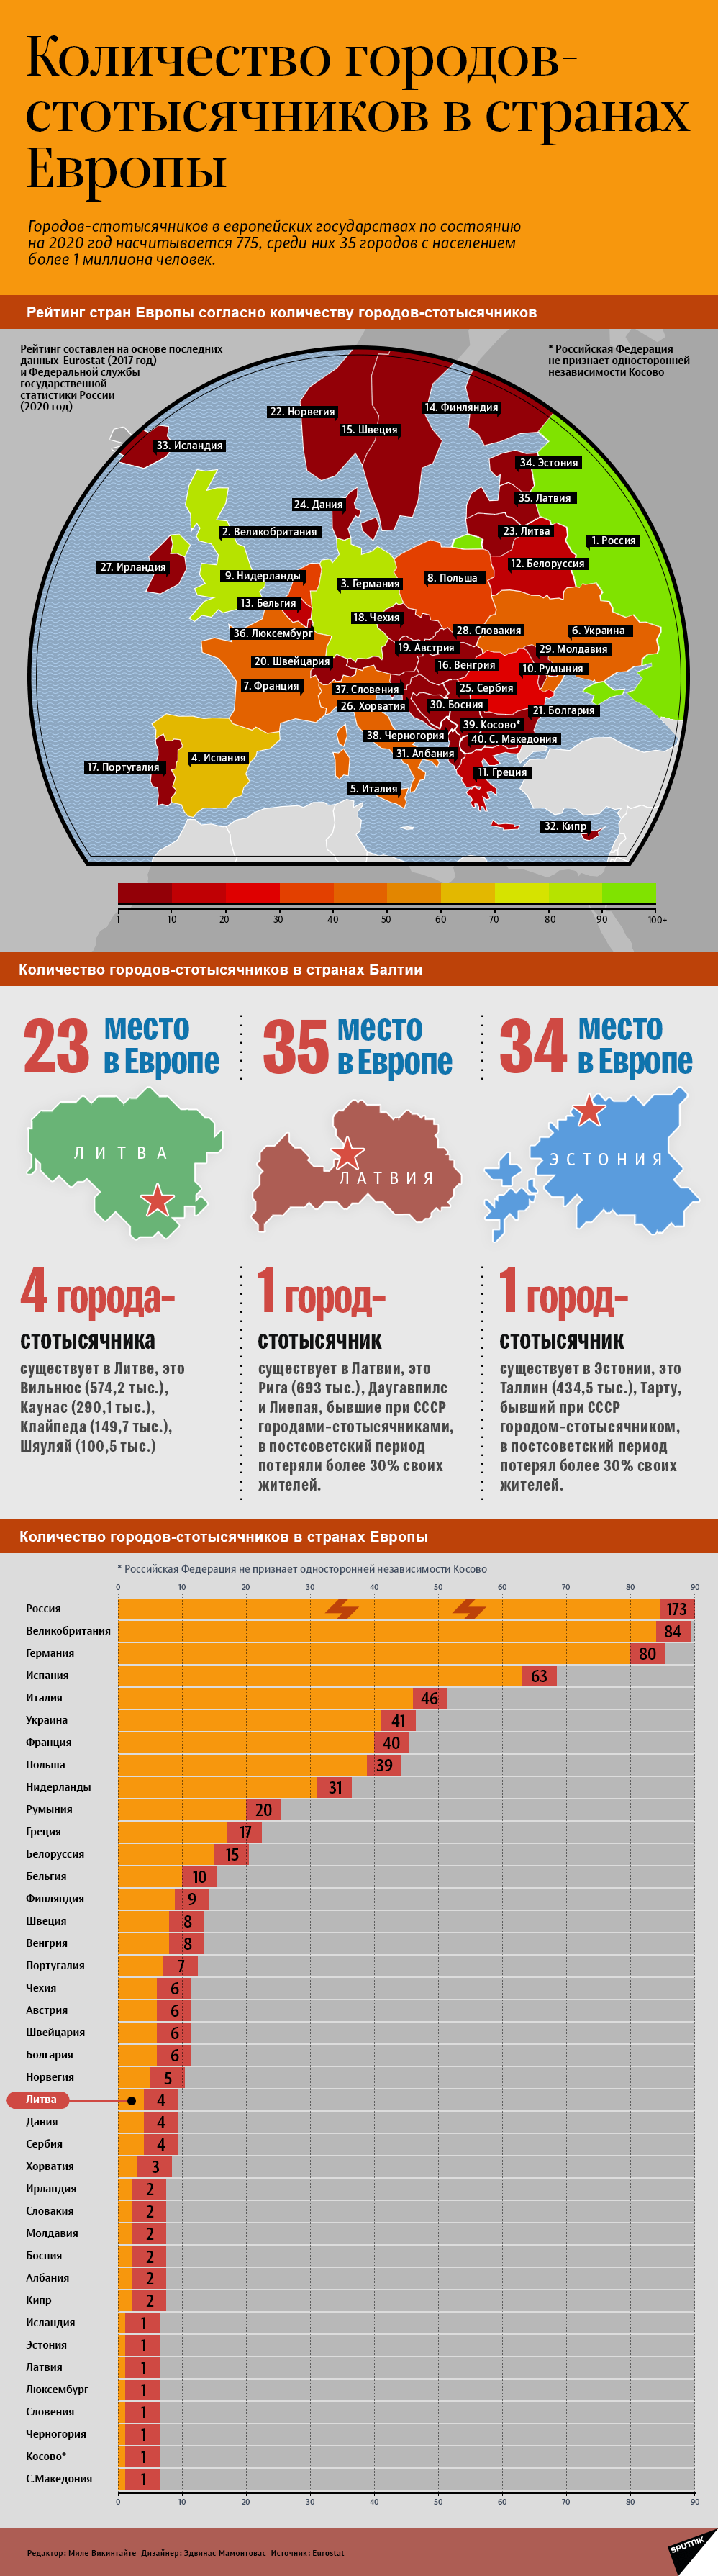 Количество городов-стотысячников в странах Европы - Sputnik Литва, 1920, 12.02.2021